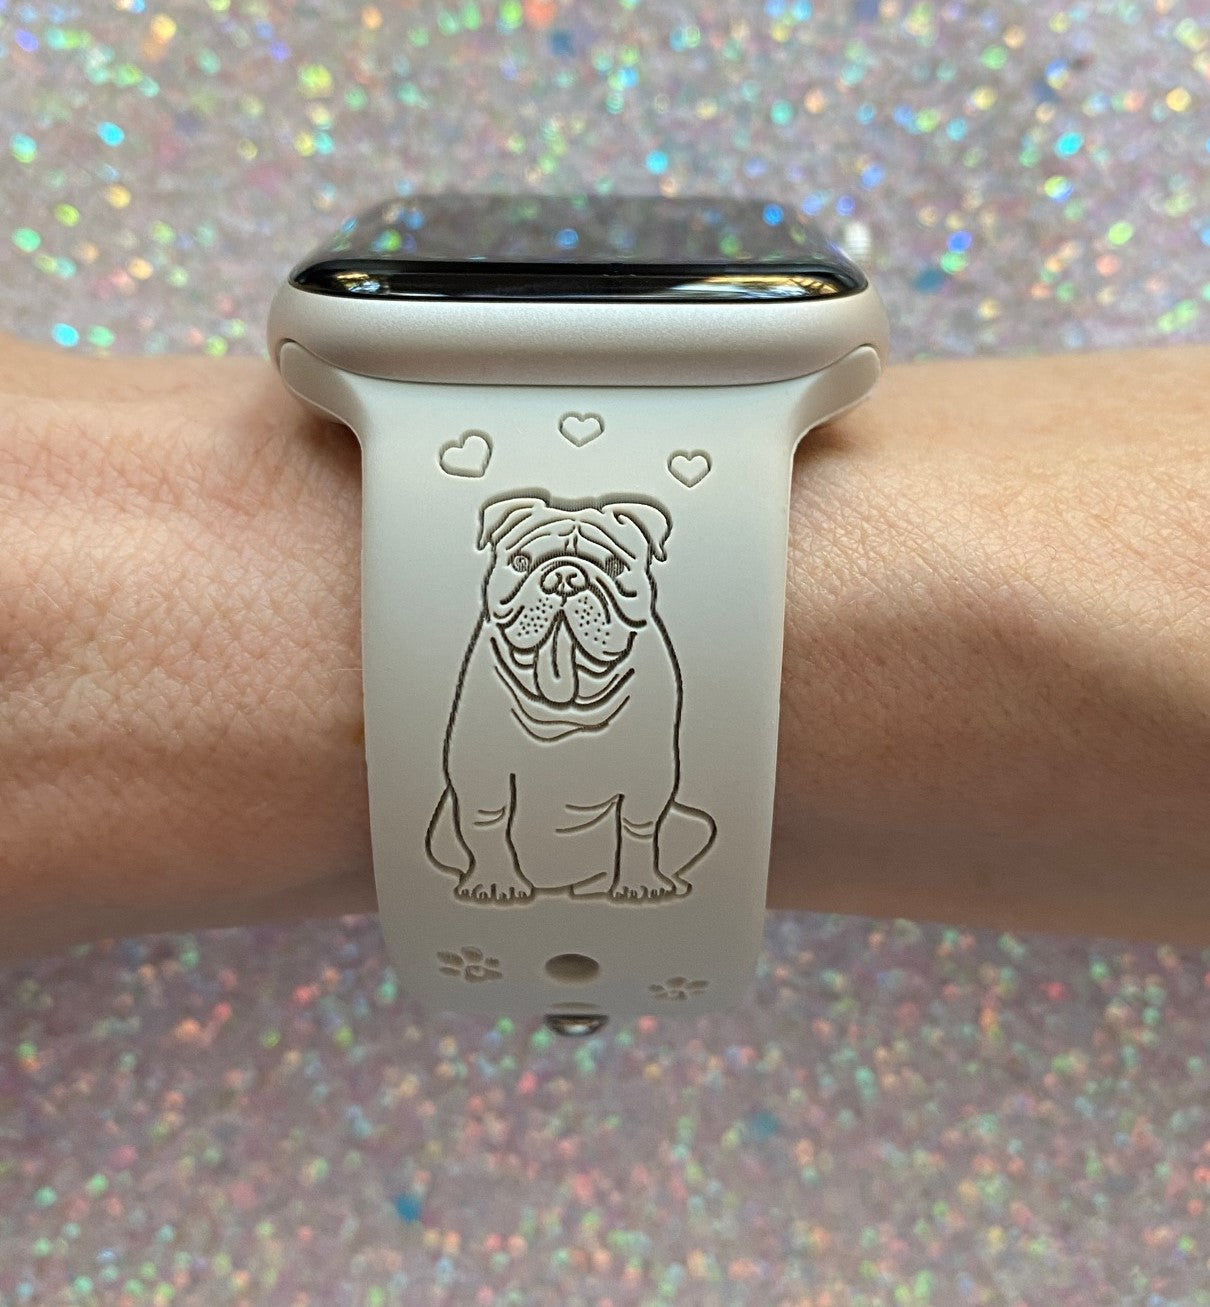 English Bulldog Apple Watch Band